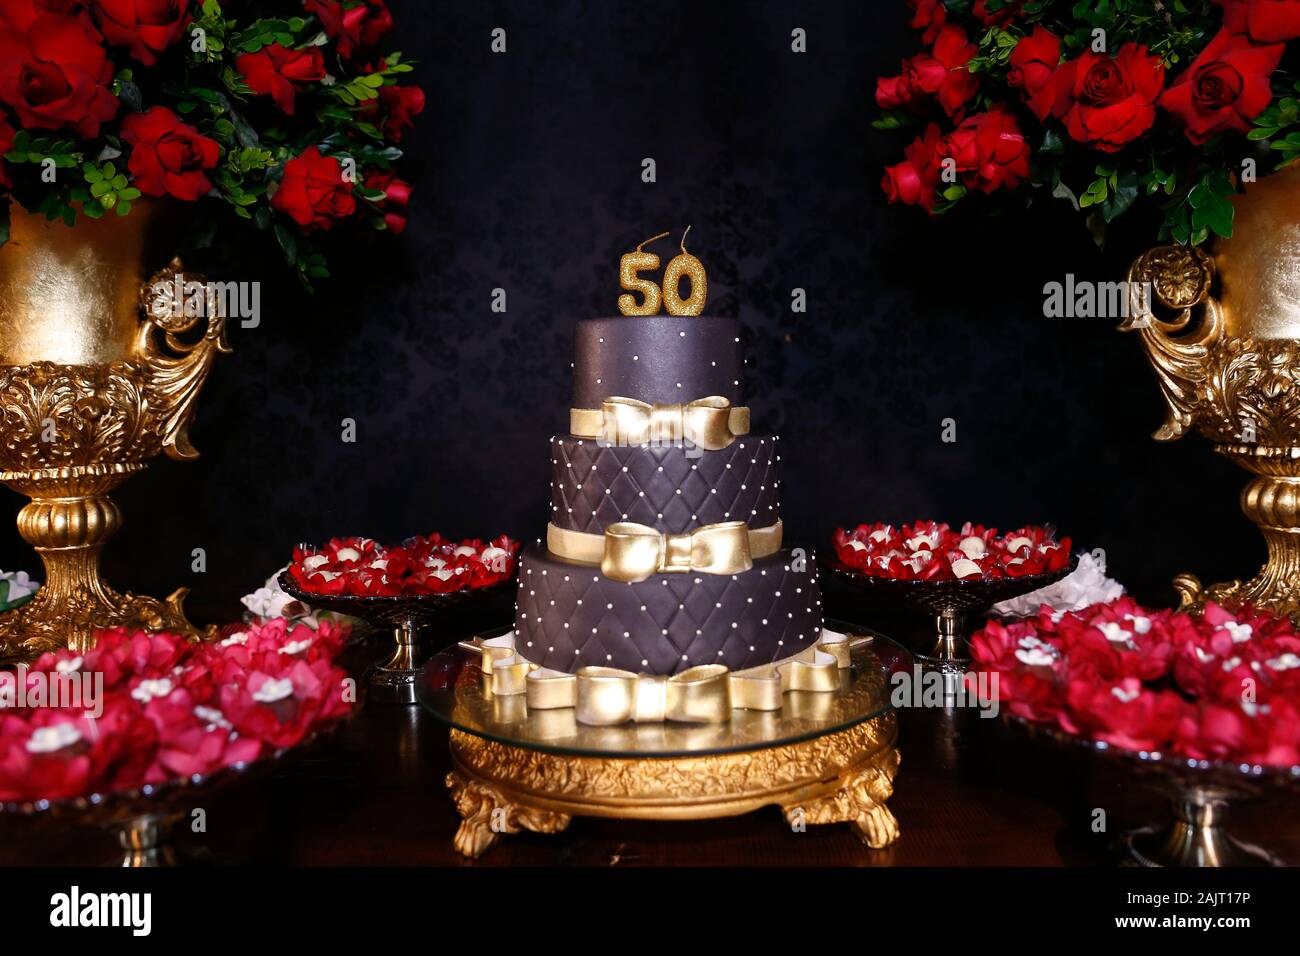 Schwarz Geburtstag Kuchen mit goldenen Details - 50 Jahre Jubiläum - 50 Jahre Kerze Stockfoto